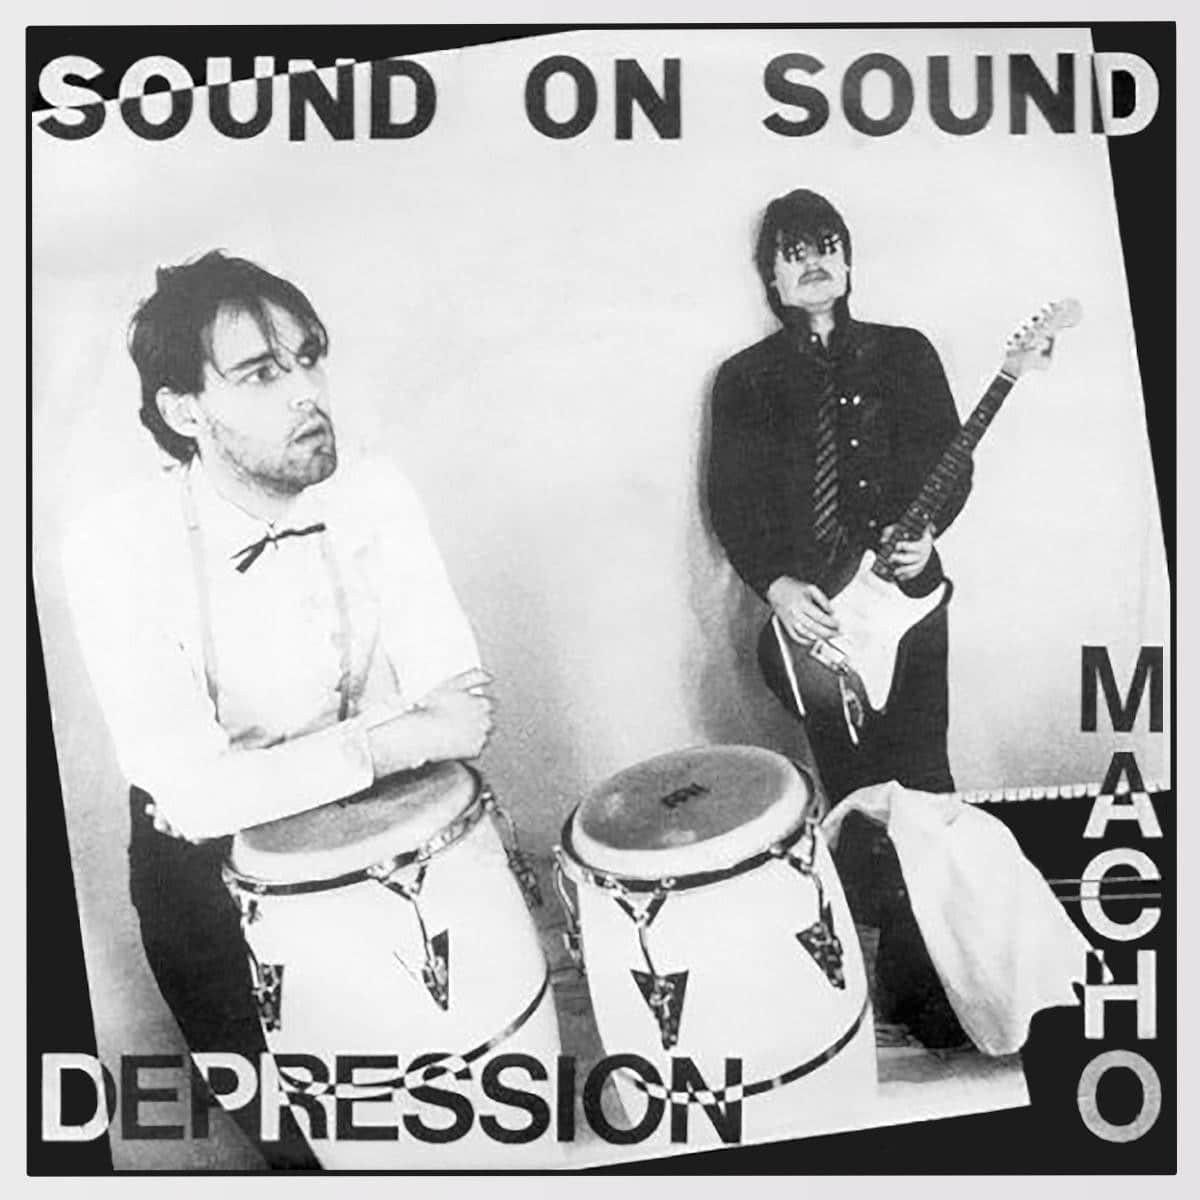 Sound On Sound - Macho/Depression - OMAGGIO014 - OMAGGIO